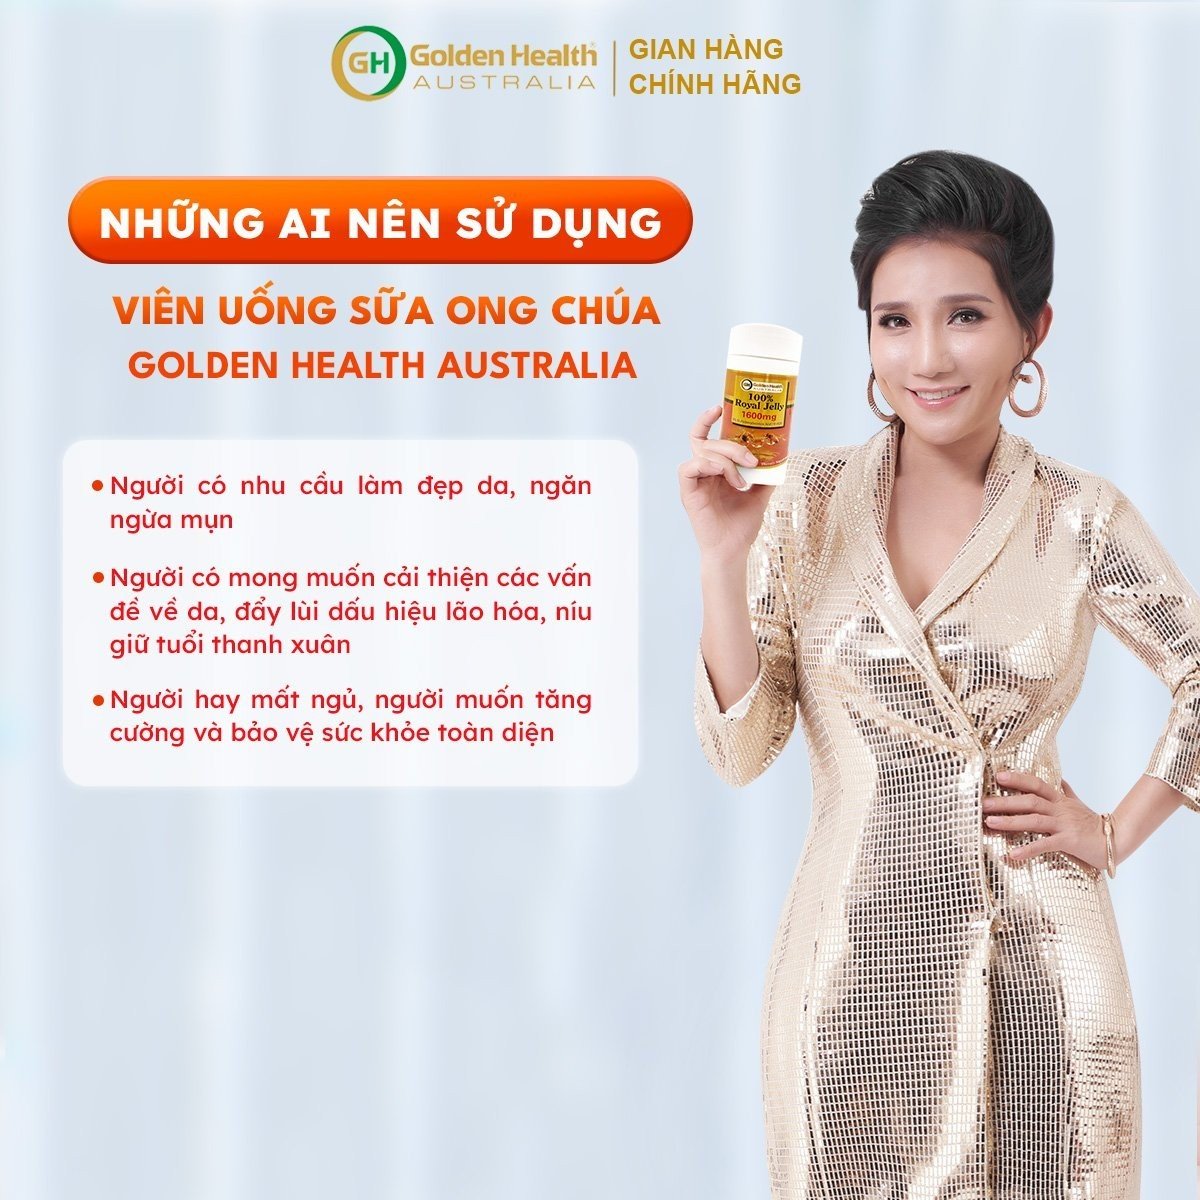 Viên Uống Sữa Ong Chúa Golden Health Royal Jelly 1600mg Hộp 365 Viên, Giúp Da Chống Lão Hóa, Nám, Sạm, Chống Mất Ngủ, Bảo Vệ Sức Khỏe Toàn Diện - Nhập Khẩu Chính Ngạch Từ Úc